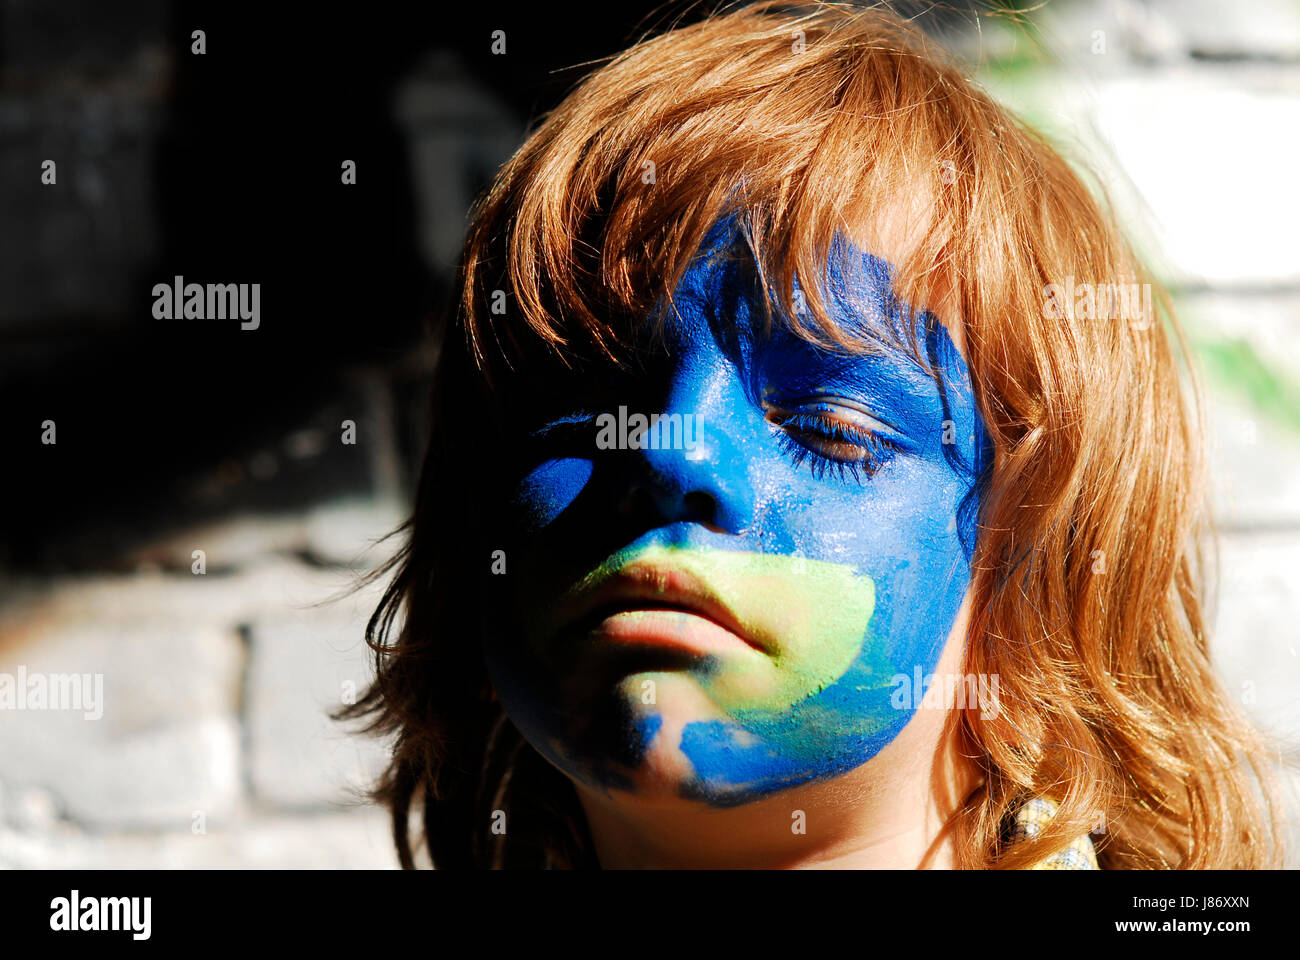 Ritratto, Bambini Ritratto, rouge, nonostante i bambini compongono, maschera, Foto Stock